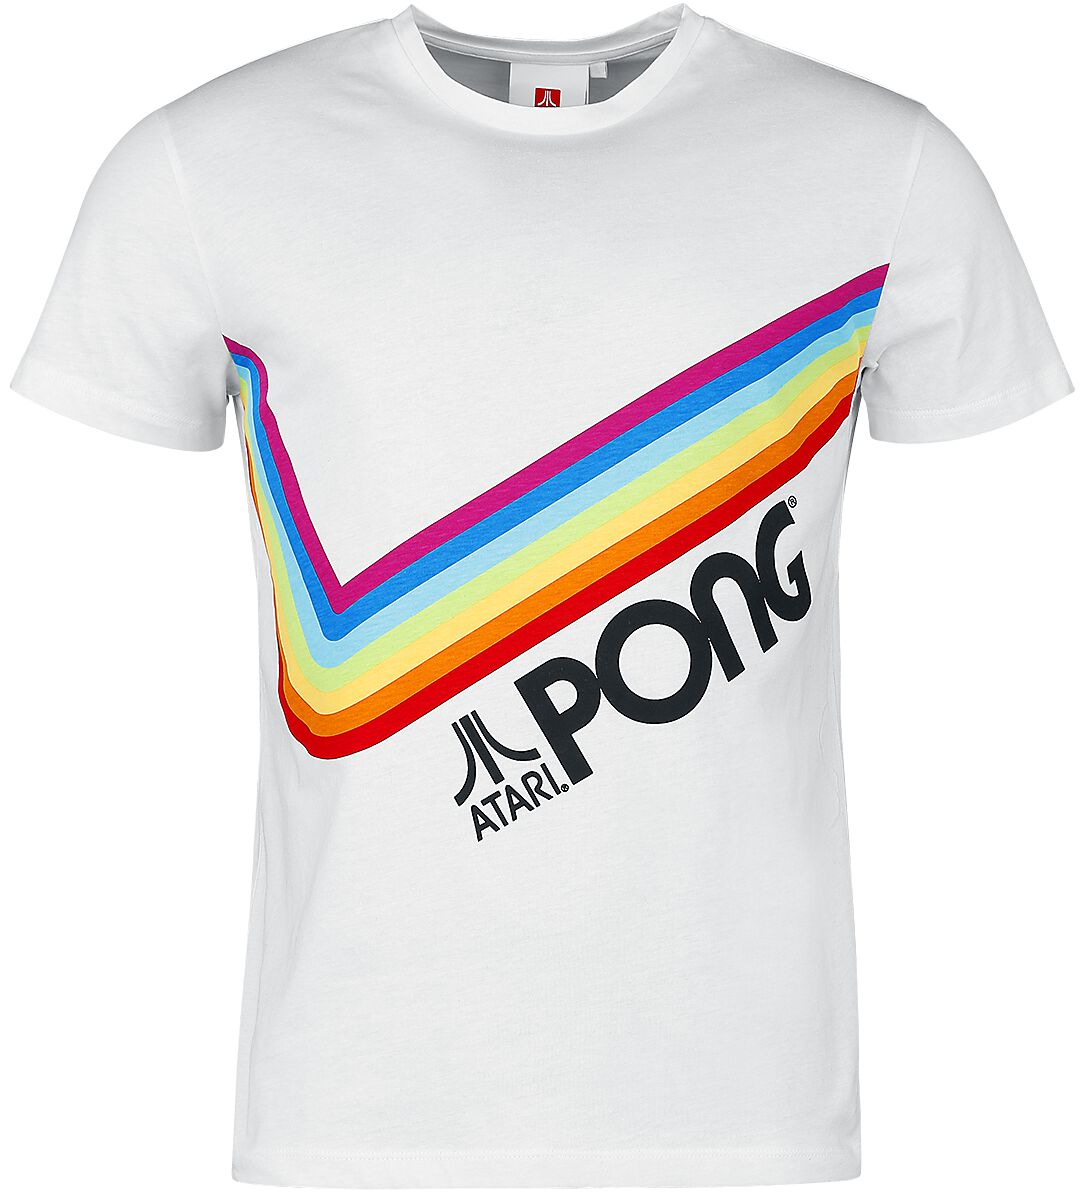 Atari - Gaming T-Shirt - Pong - Pride Rainbow - S bis 3XL - für Männer - Größe S - weiß  - EMP exklusives Merchandise! von Atari